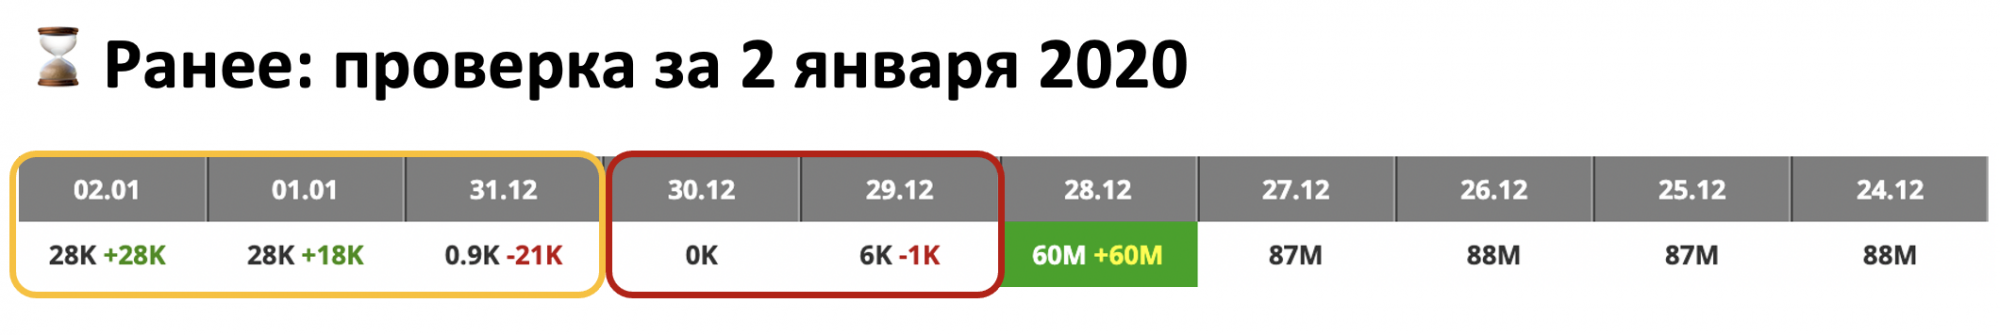 Яндекс изменил логику апдейтов впервые за 8 лет